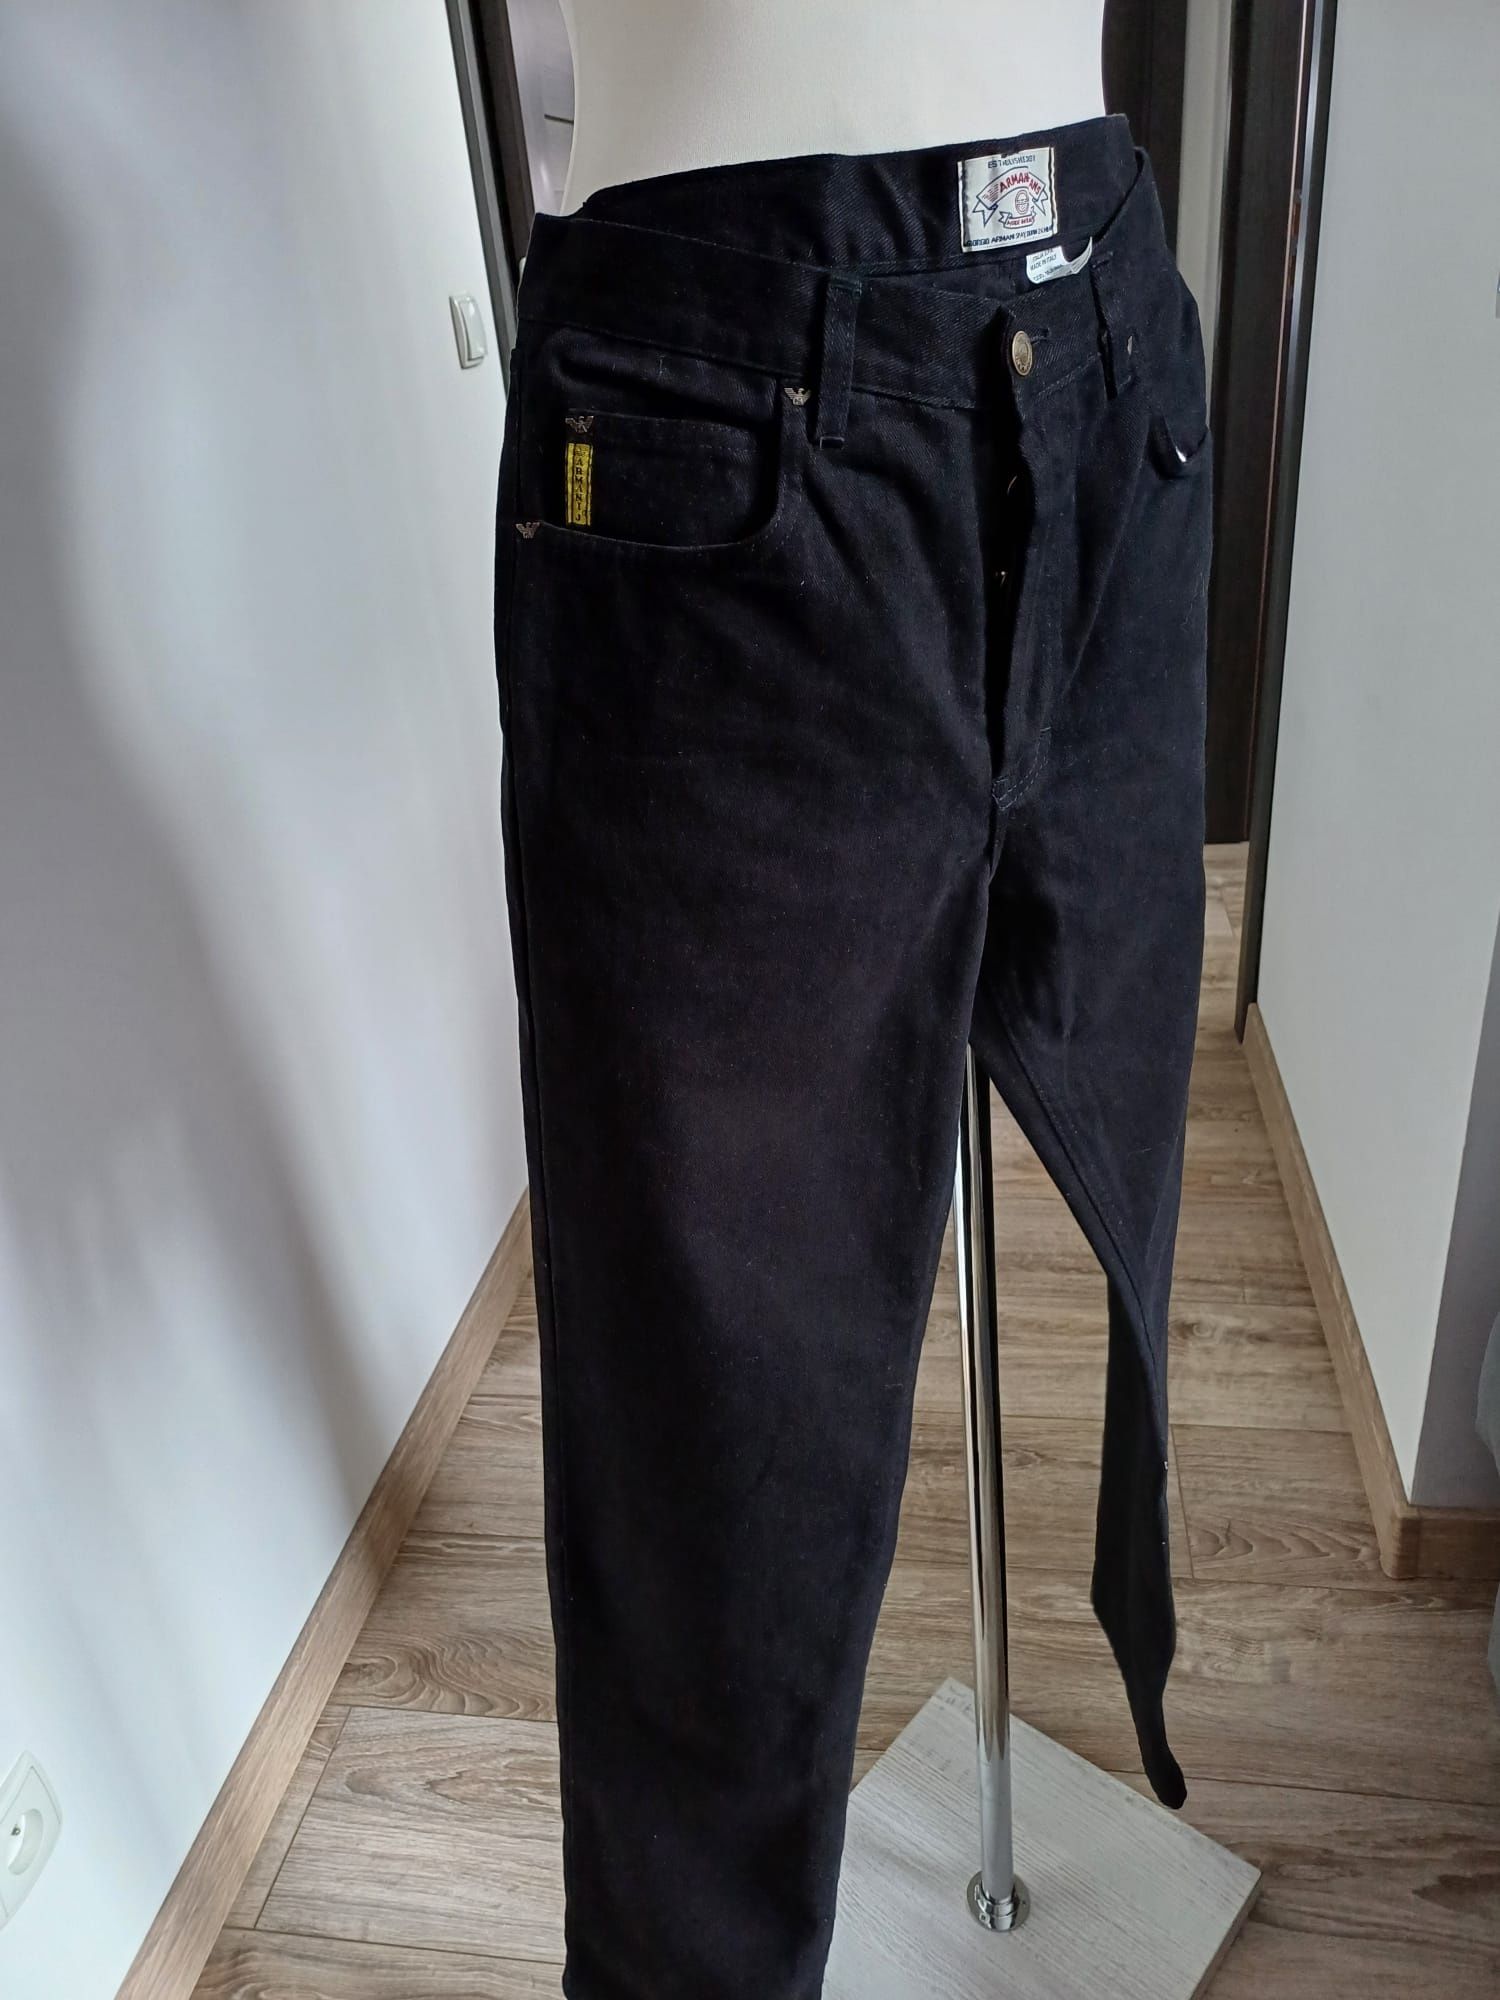 Spodnie męskie czarny mięsisty jeans Armani Jeans rozm L.